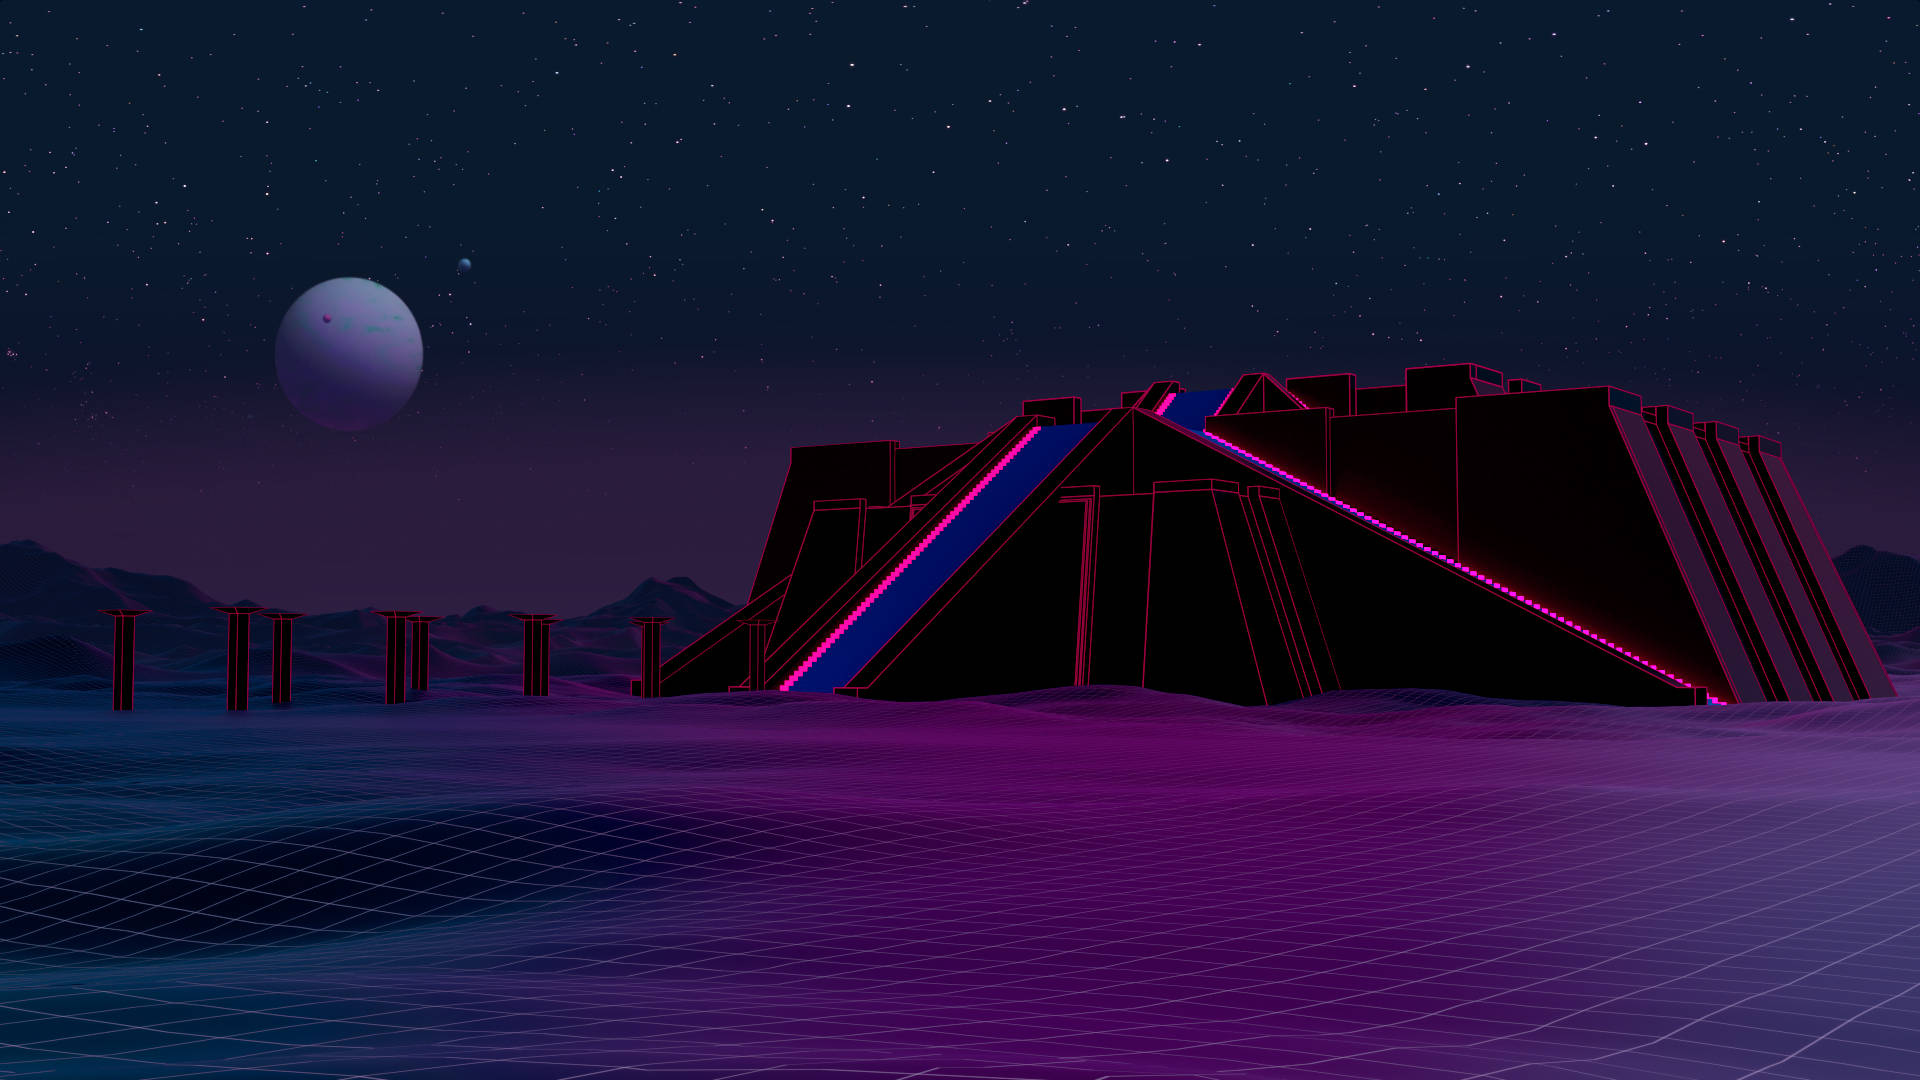 “Welcome to the neon illuminated Retrowave Ziggurat” Wallpaper